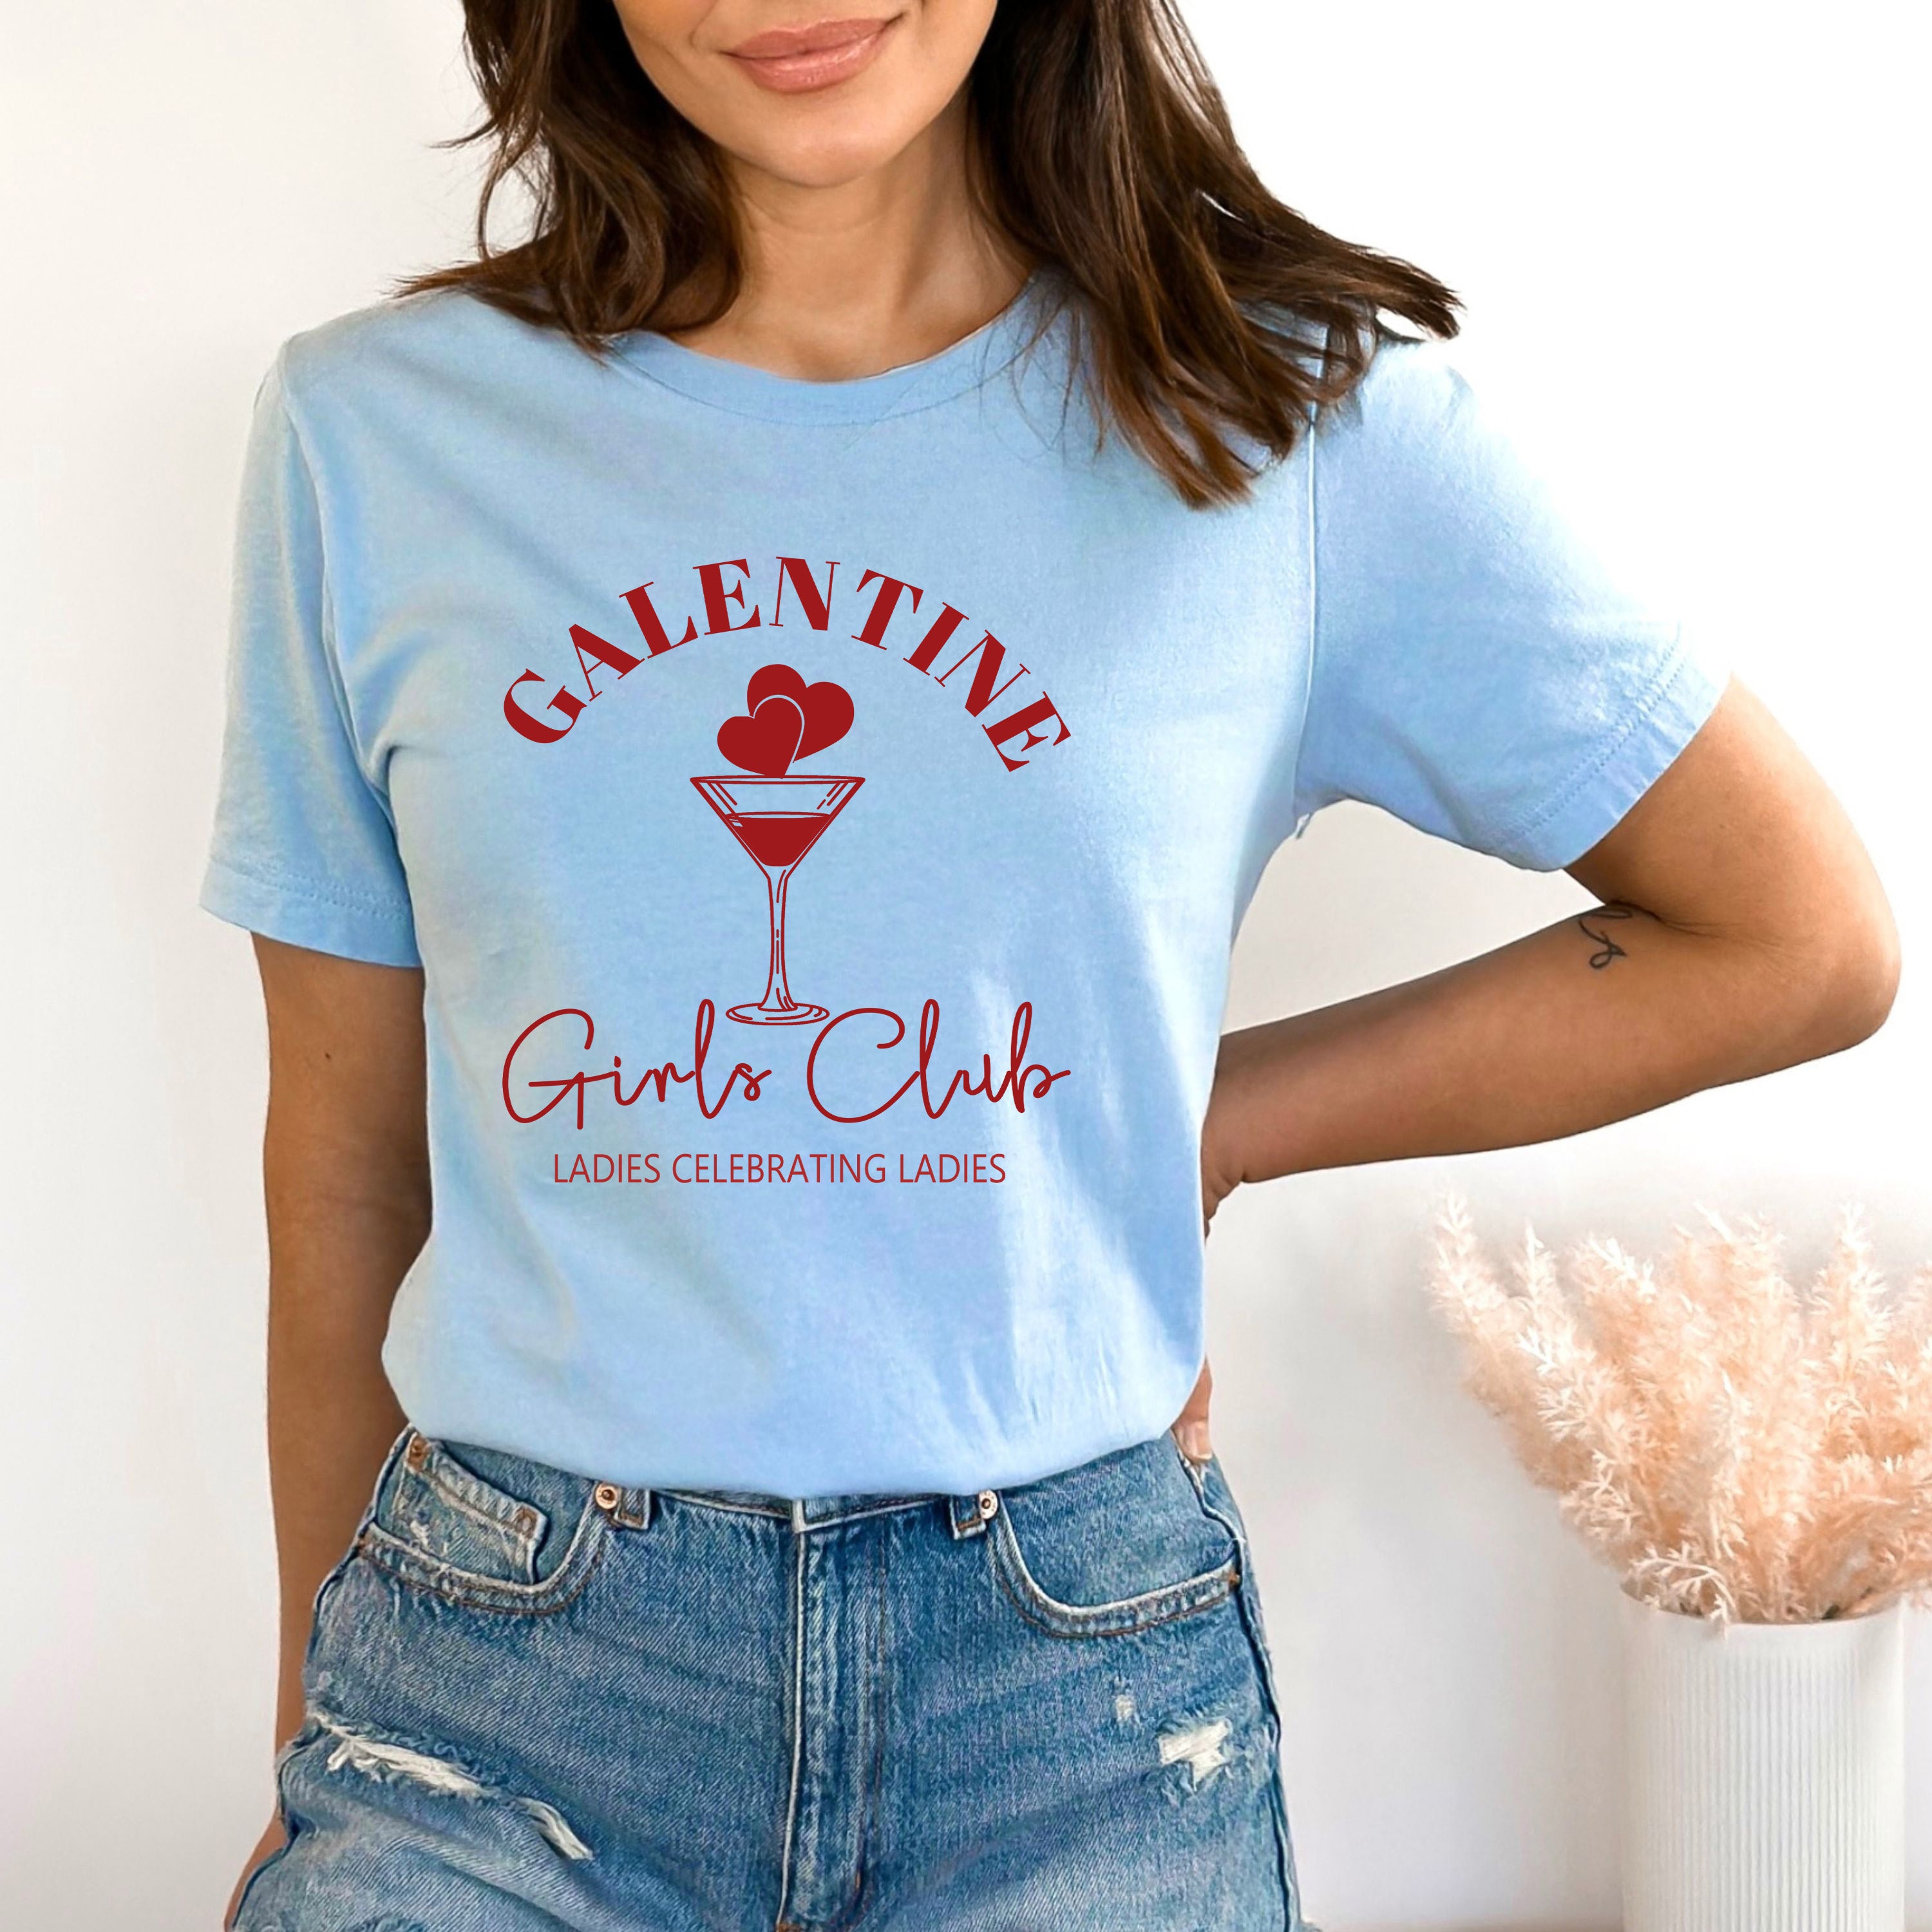 Galentine girls club - Bella canvas